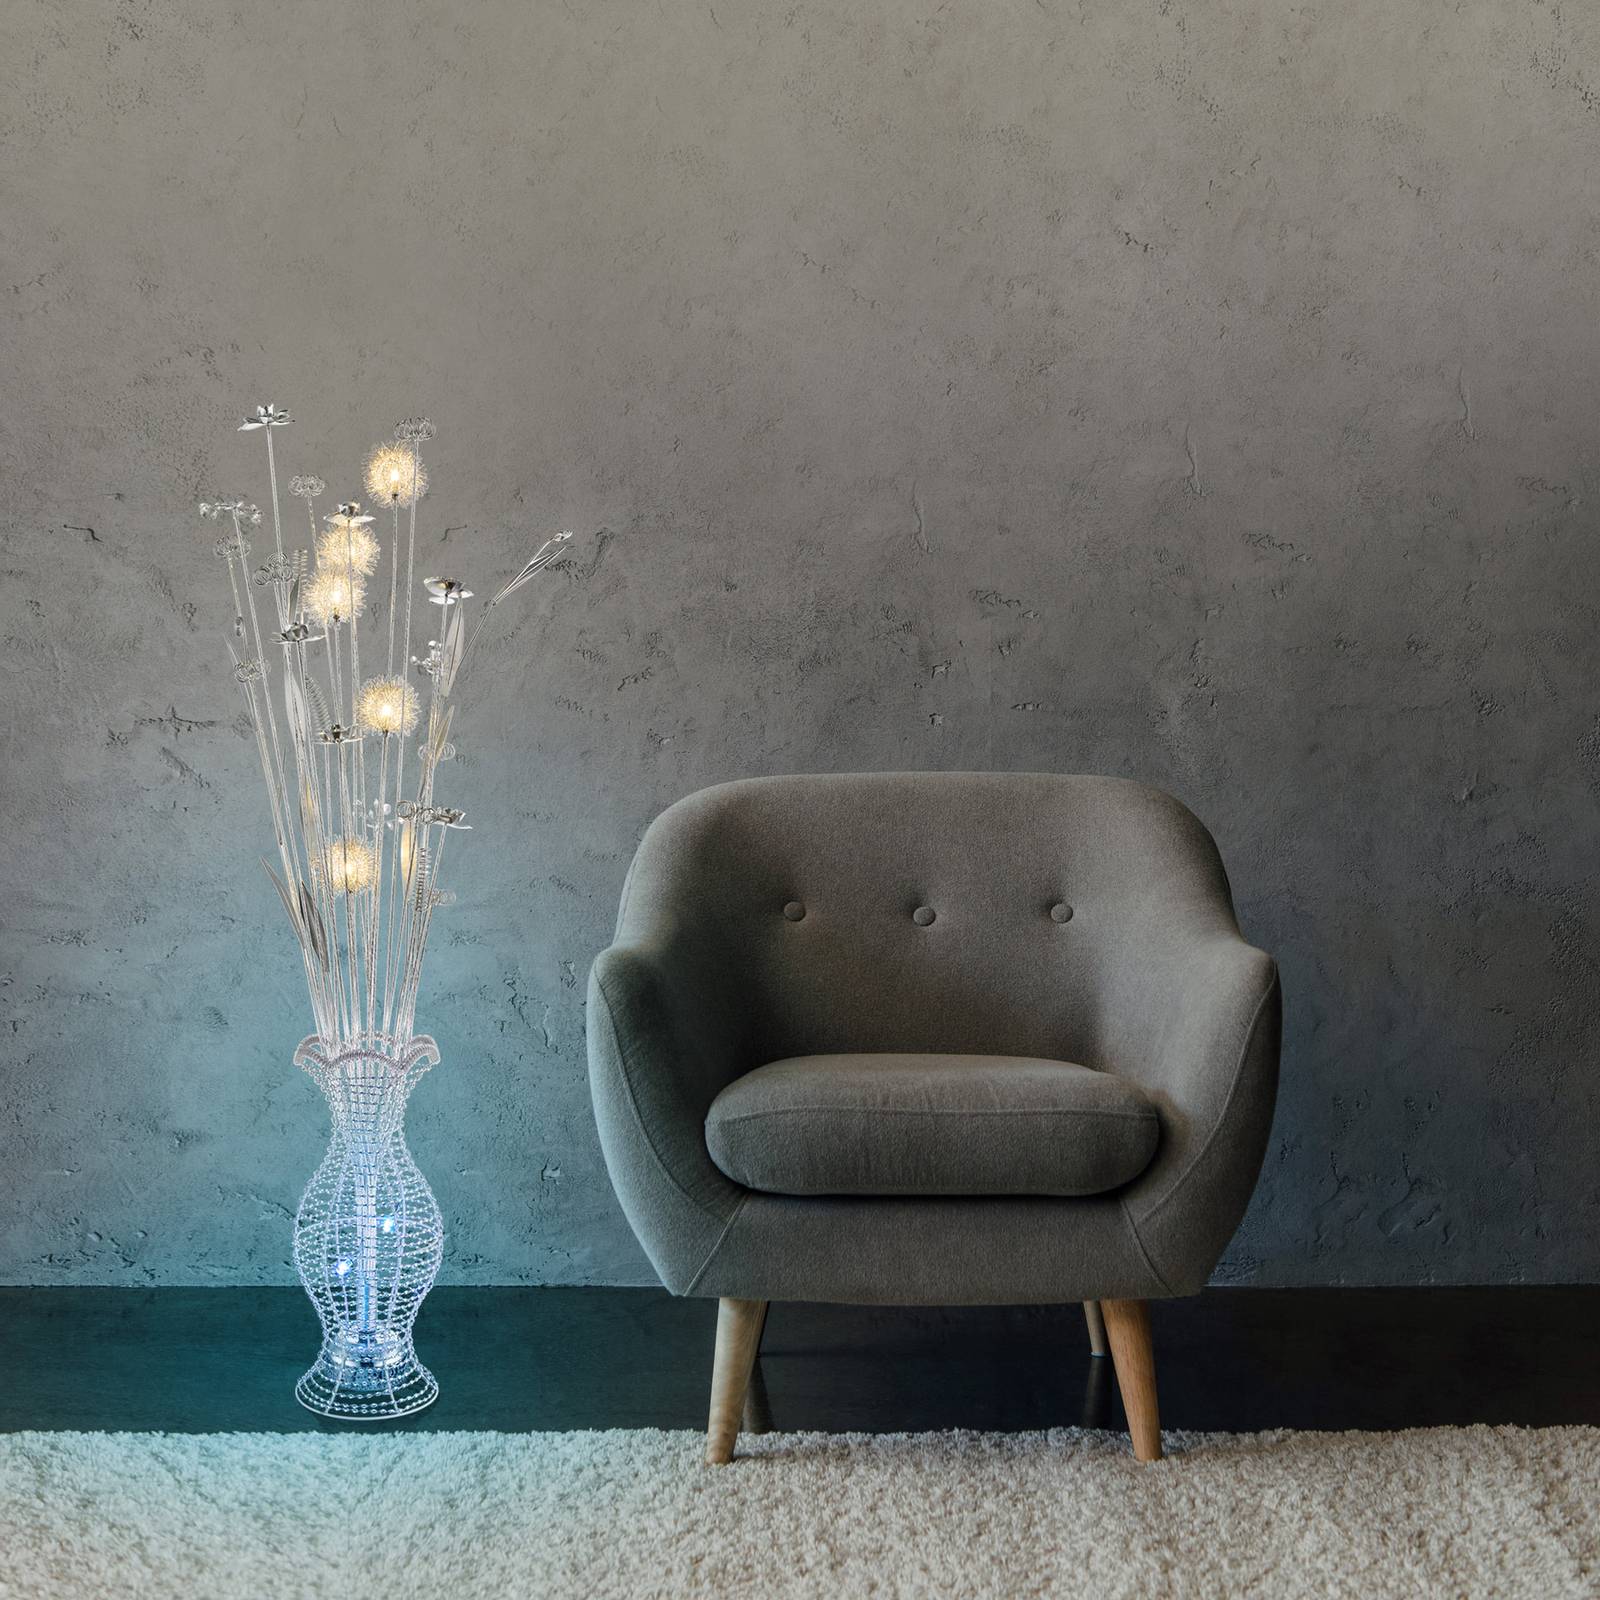 Lampadaire LED Anton, couleurs RVB, aspect vase